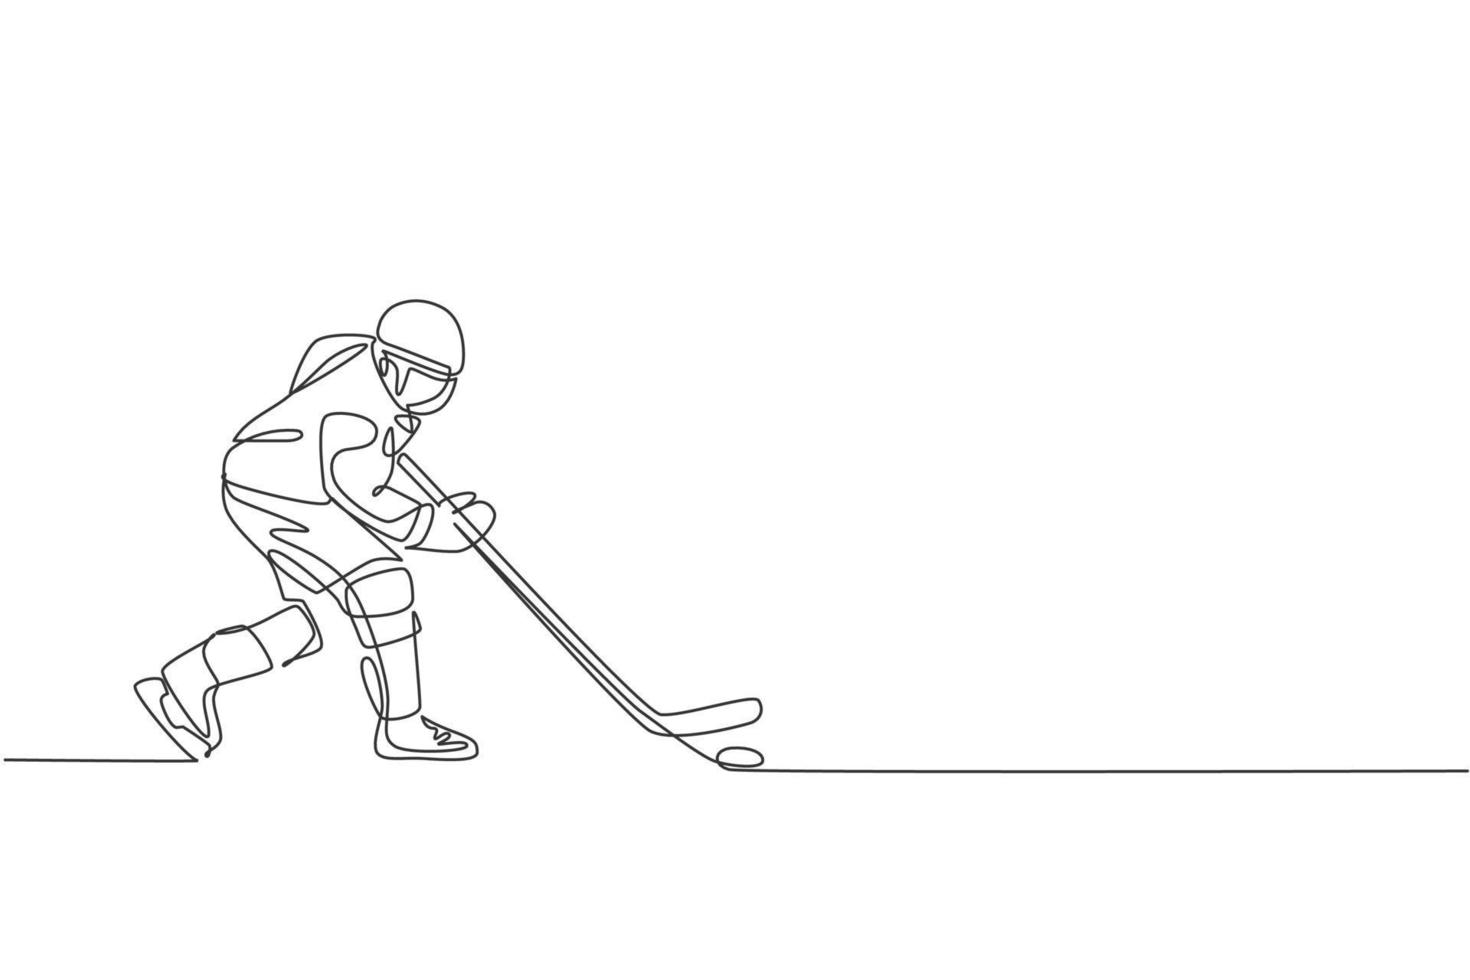 un dibujo de línea continua de un joven jugador profesional de hockey sobre hielo haciendo ejercicio y practicando en un estadio de pista de hielo. concepto de deporte extremo saludable. Ilustración de vector de diseño de dibujo de línea única dinámica